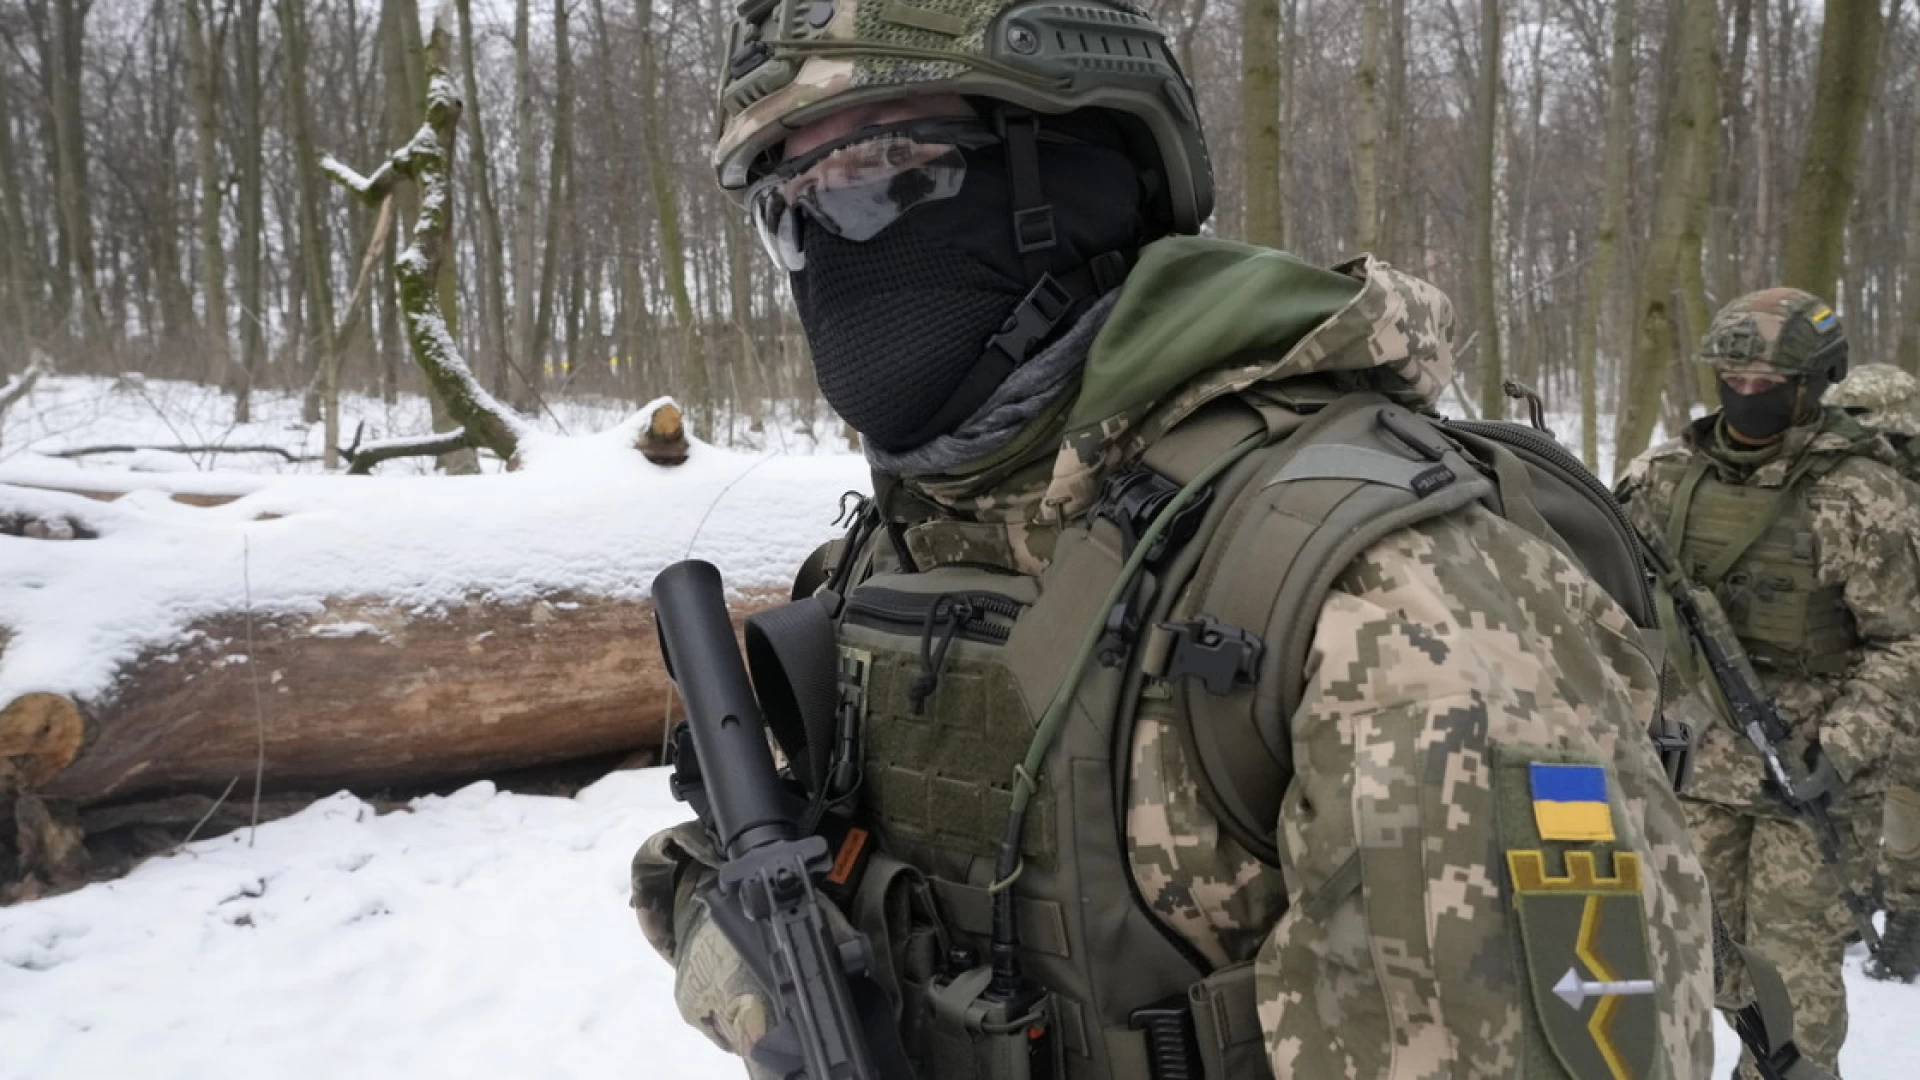 Dalla Direzione Provinciale Inail Isernia appello affinchè in Ucraina tacciano le armi.